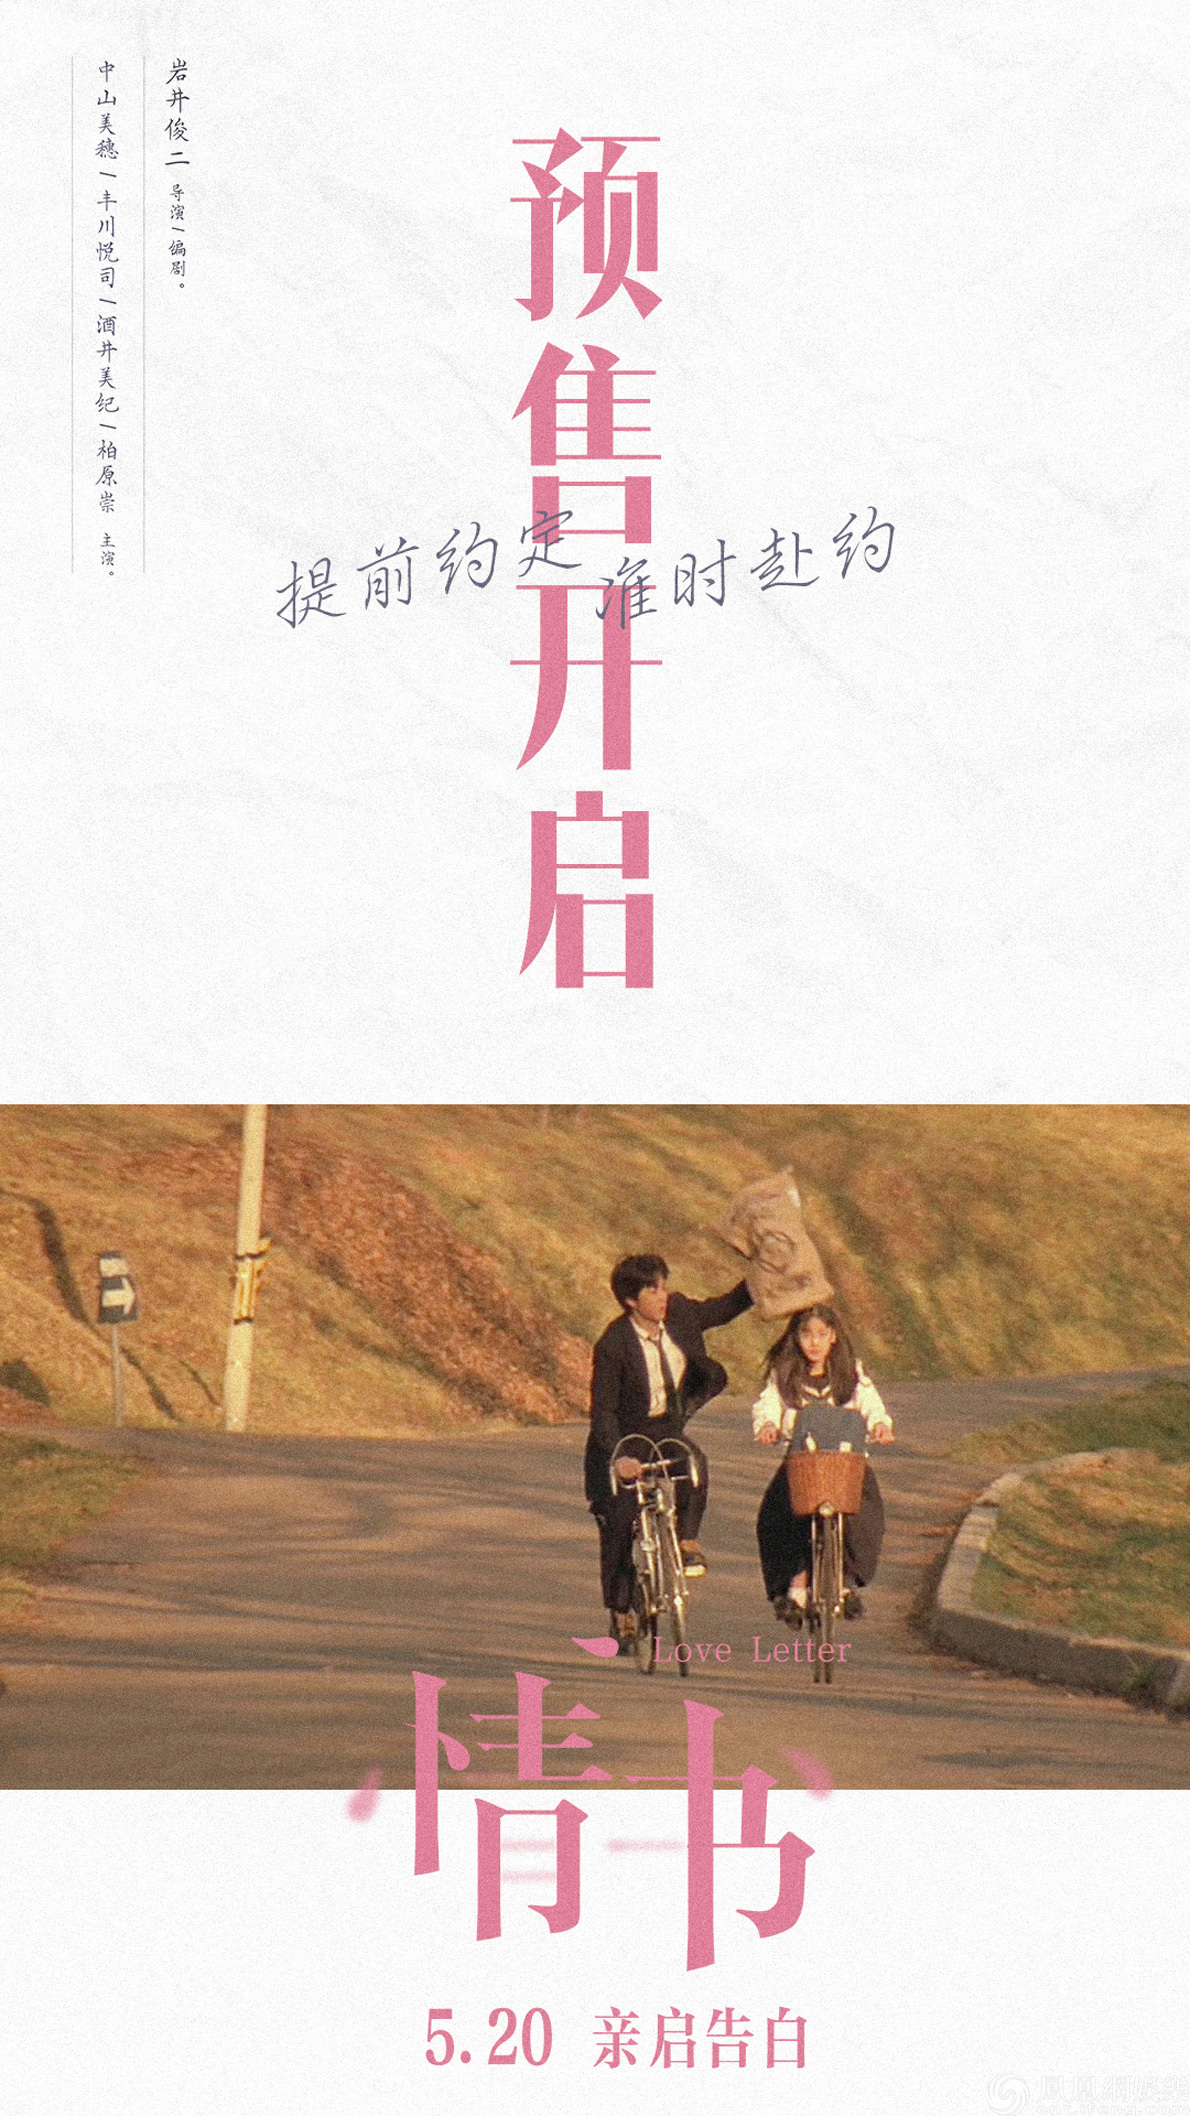 导演岩井俊二亲自录制问候视频向中国观众表达感谢,称《情书》是一部"